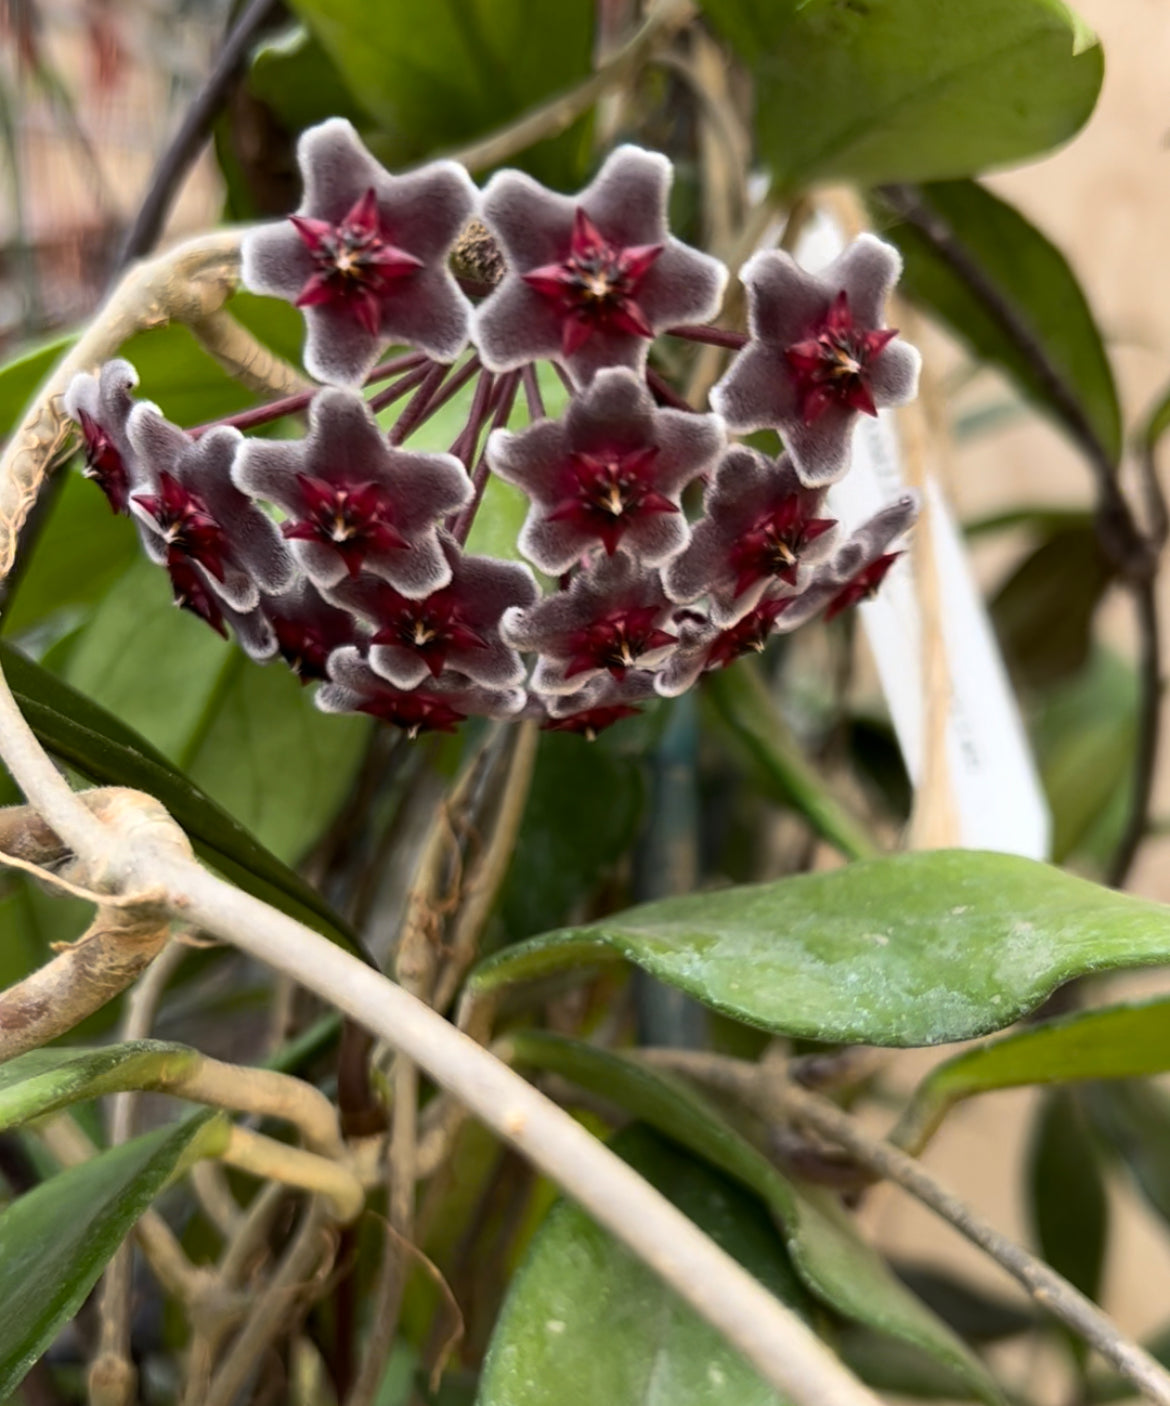 Royal Hawaiian Purple Pubicalyx